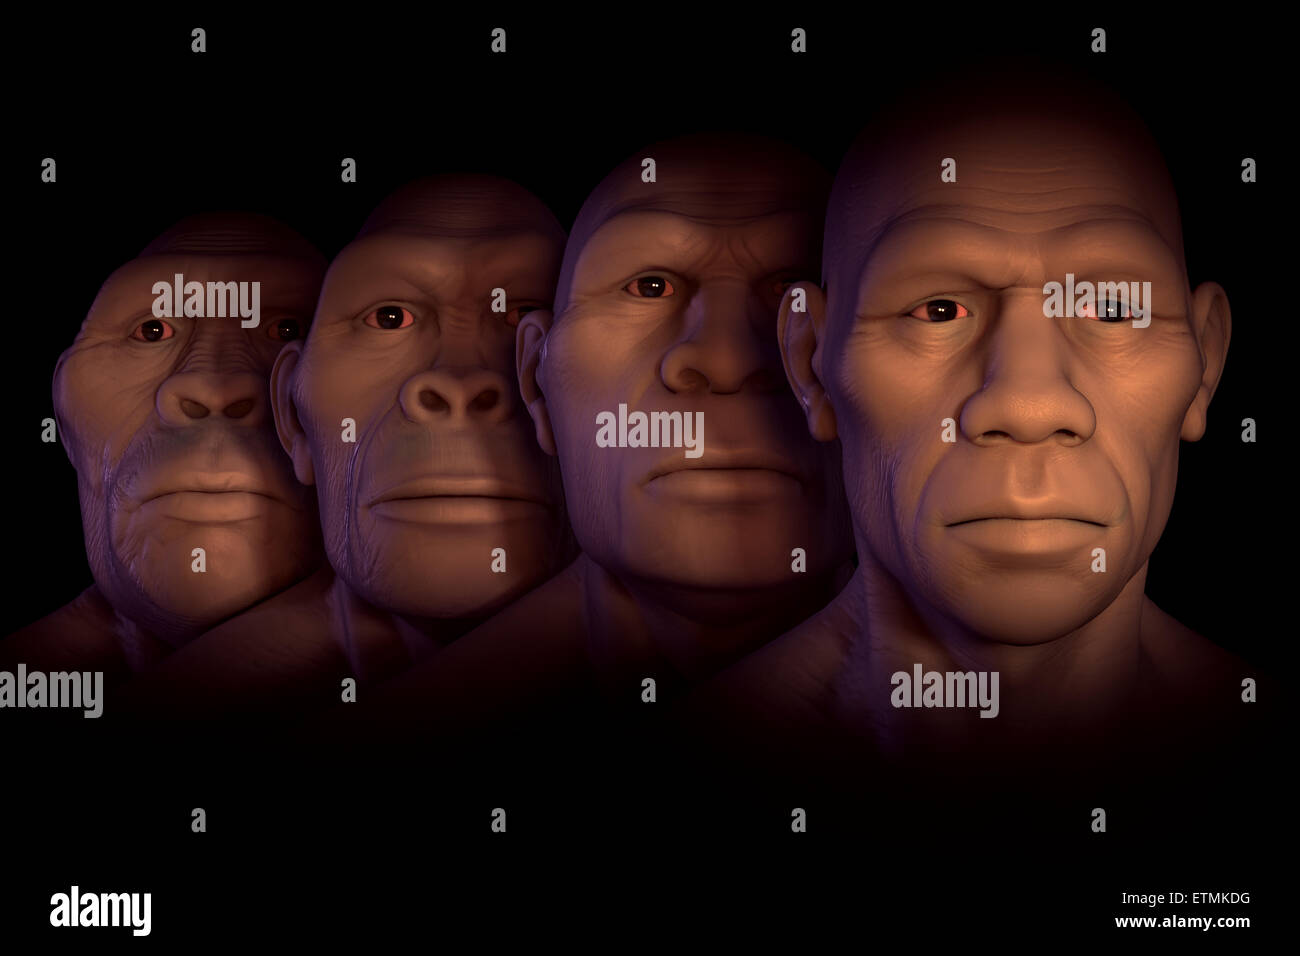 Image conceptuel montrant quatre étapes de l'évolution humaine ; l'australopithecus, Homo habilis, Homo Erectus et Homo Sapiens. Banque D'Images